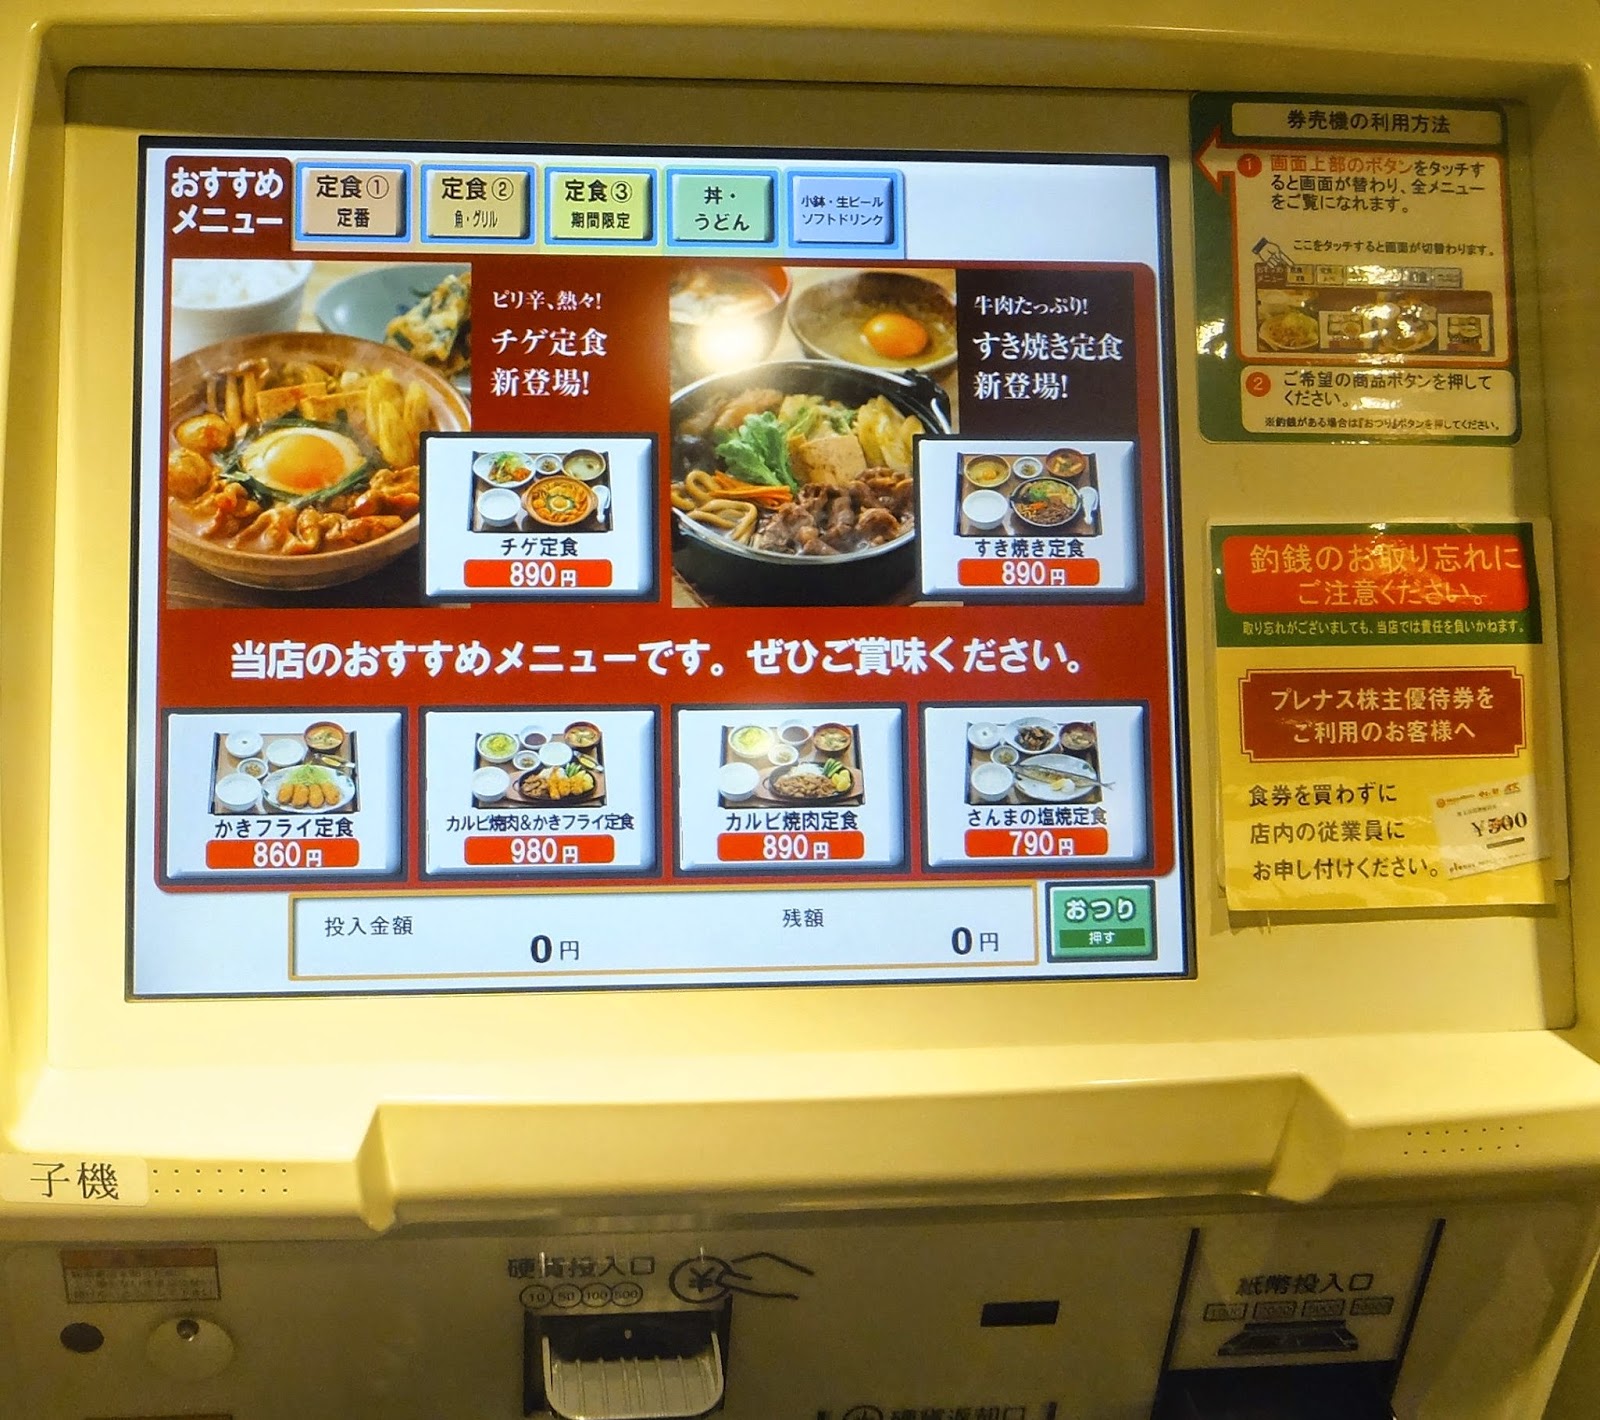 Restaurant Japanese Ticket Machine